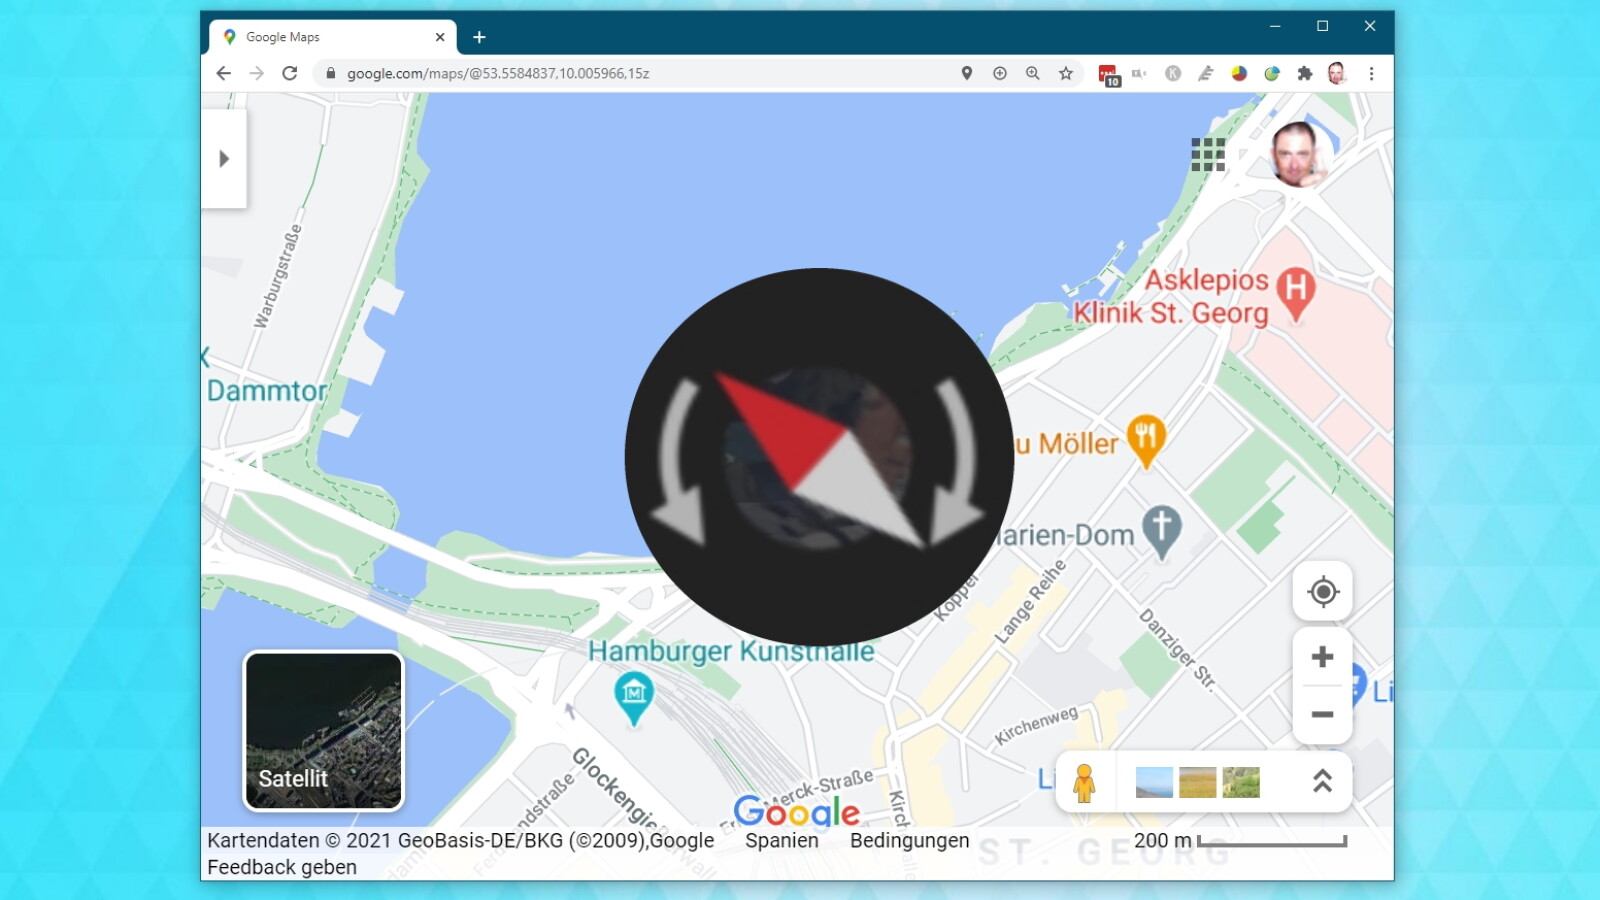 Google Maps: Himmelsrichtung ablesen - So geht's | NETZWELT